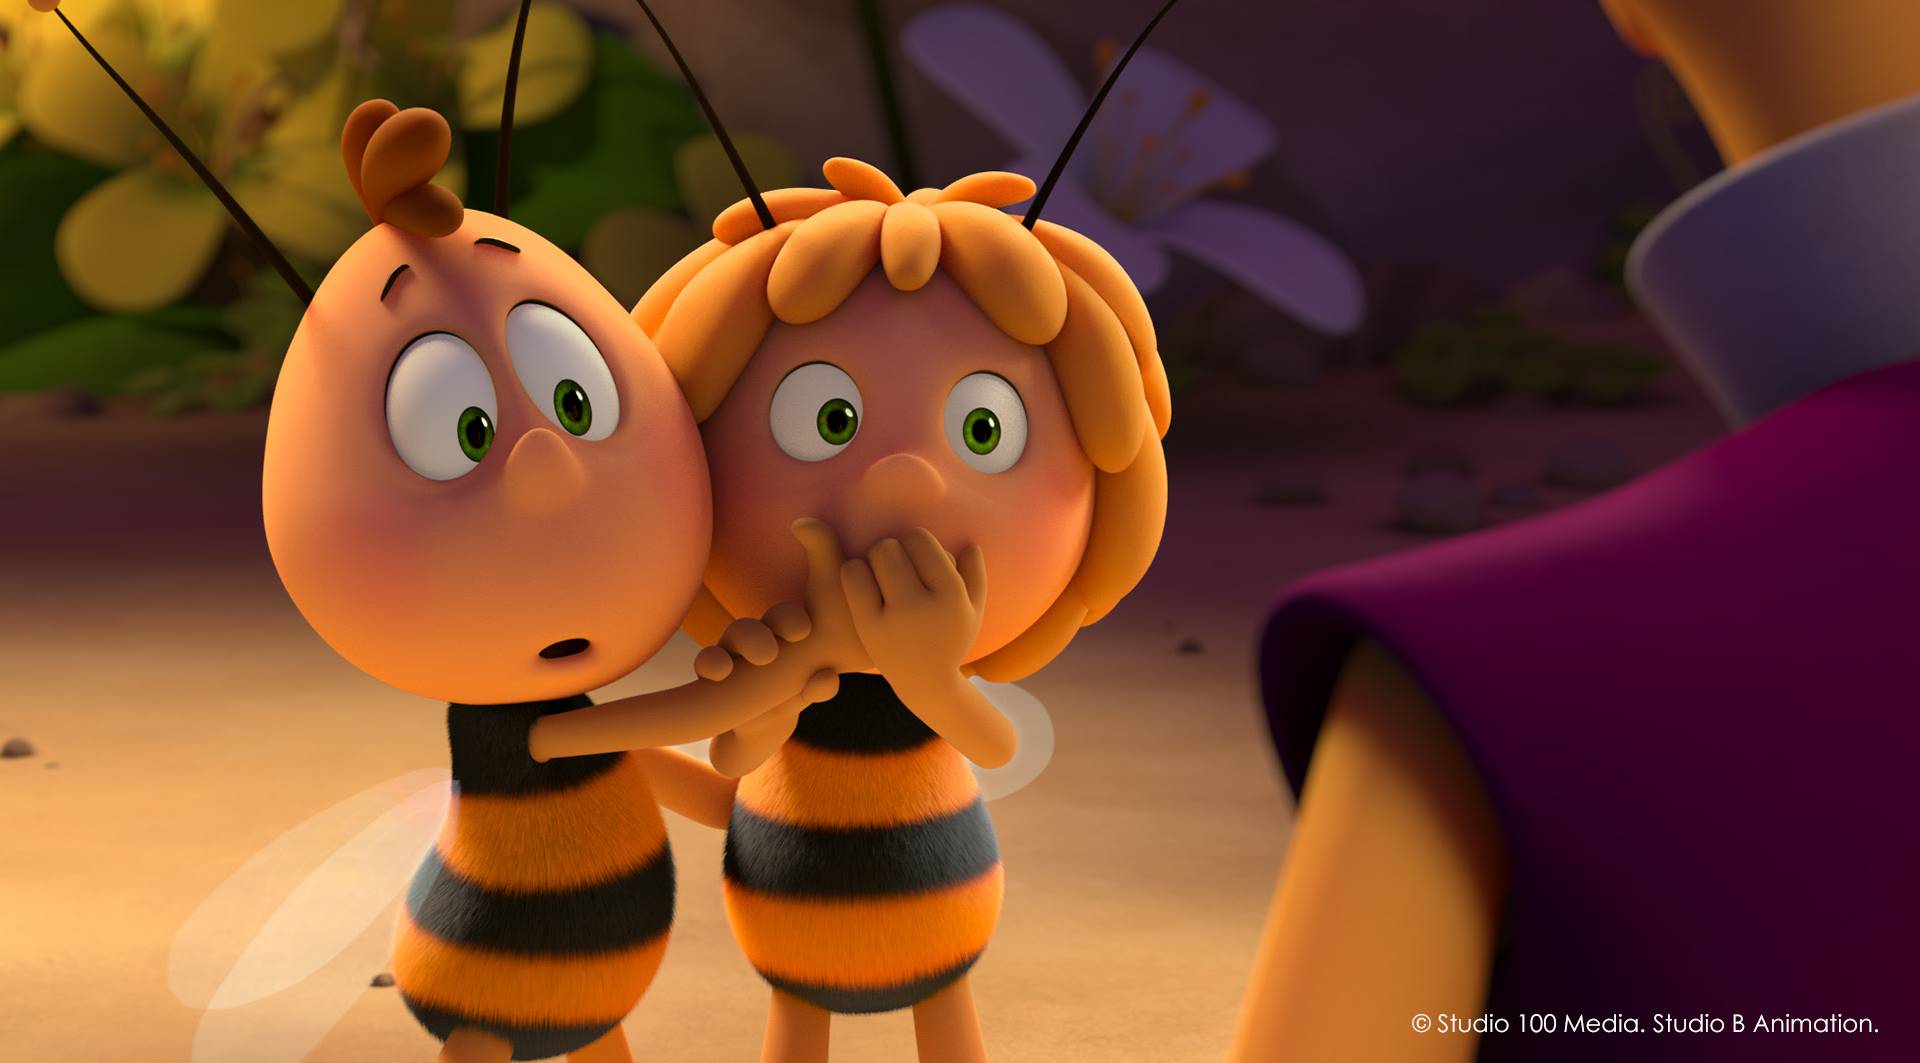 Medene igre dolaze: Omiljena pčelica vraća se na kino platna